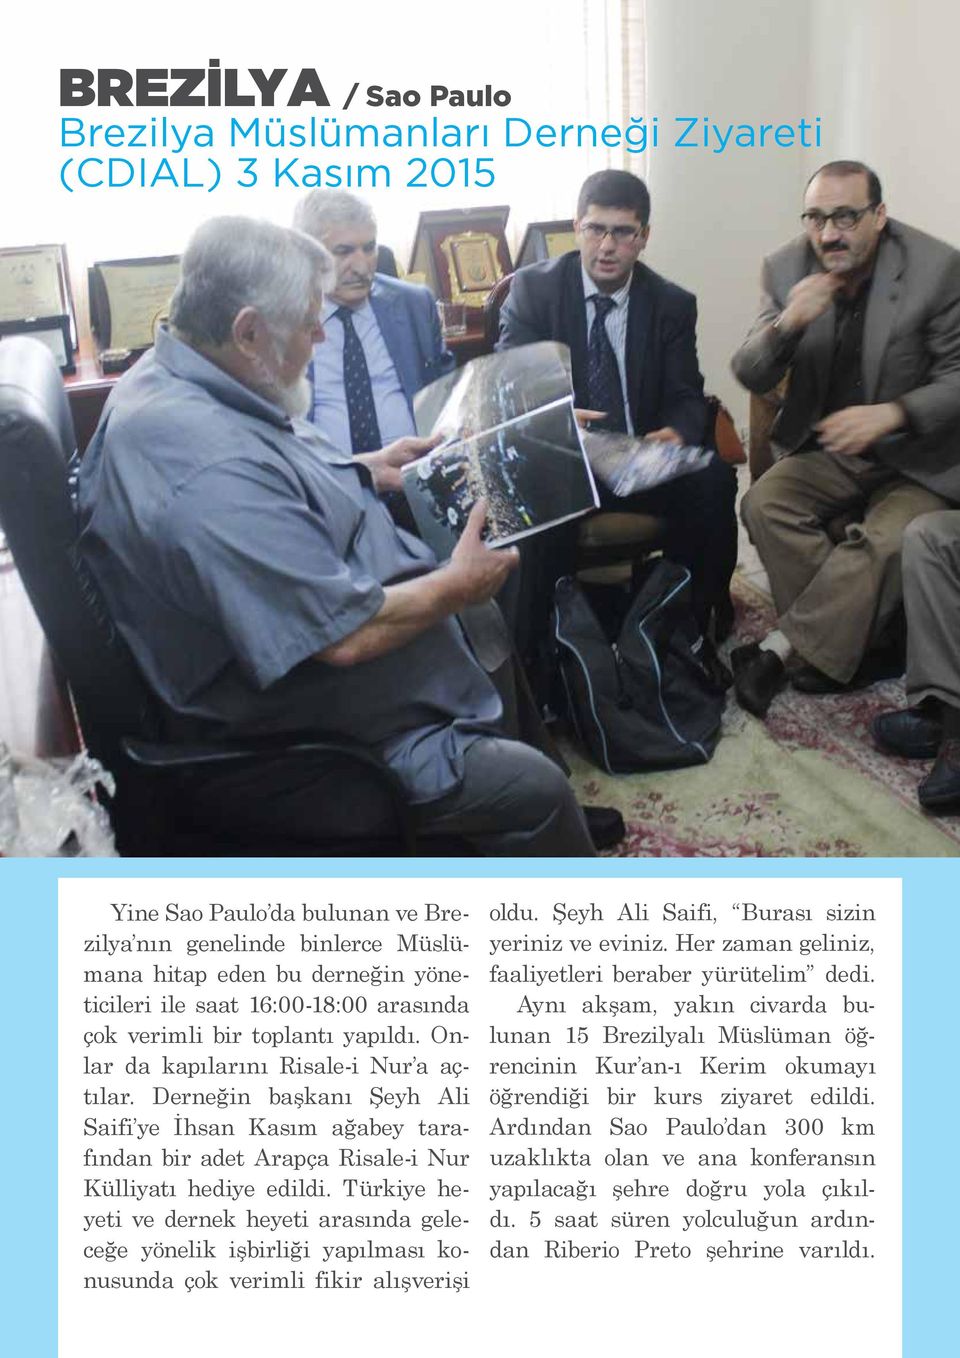 Derneğin başkanı Şeyh Ali Saifi ye İhsan Kasım ağabey tarafından bir adet Arapça Risale-i Nur Külliyatı hediye edildi.